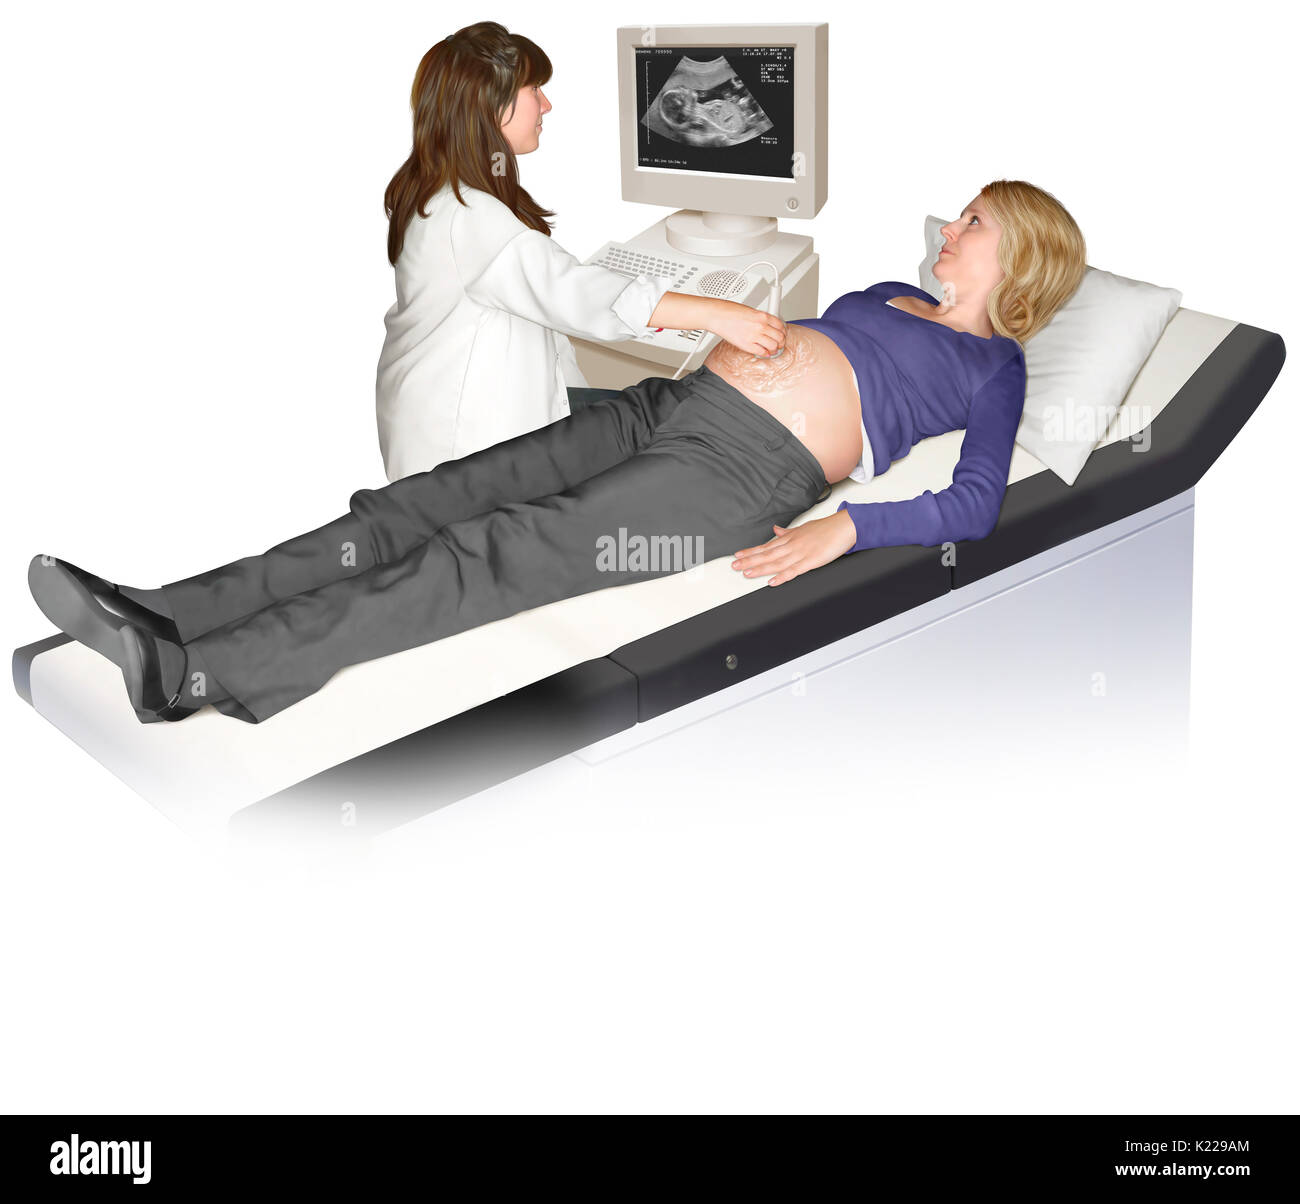 Medizinische Bildgebungsverfahren, schildert die inneren Organe über die Echos wie Ultraschall Wellen Reisen durch den Körper. Stockfoto